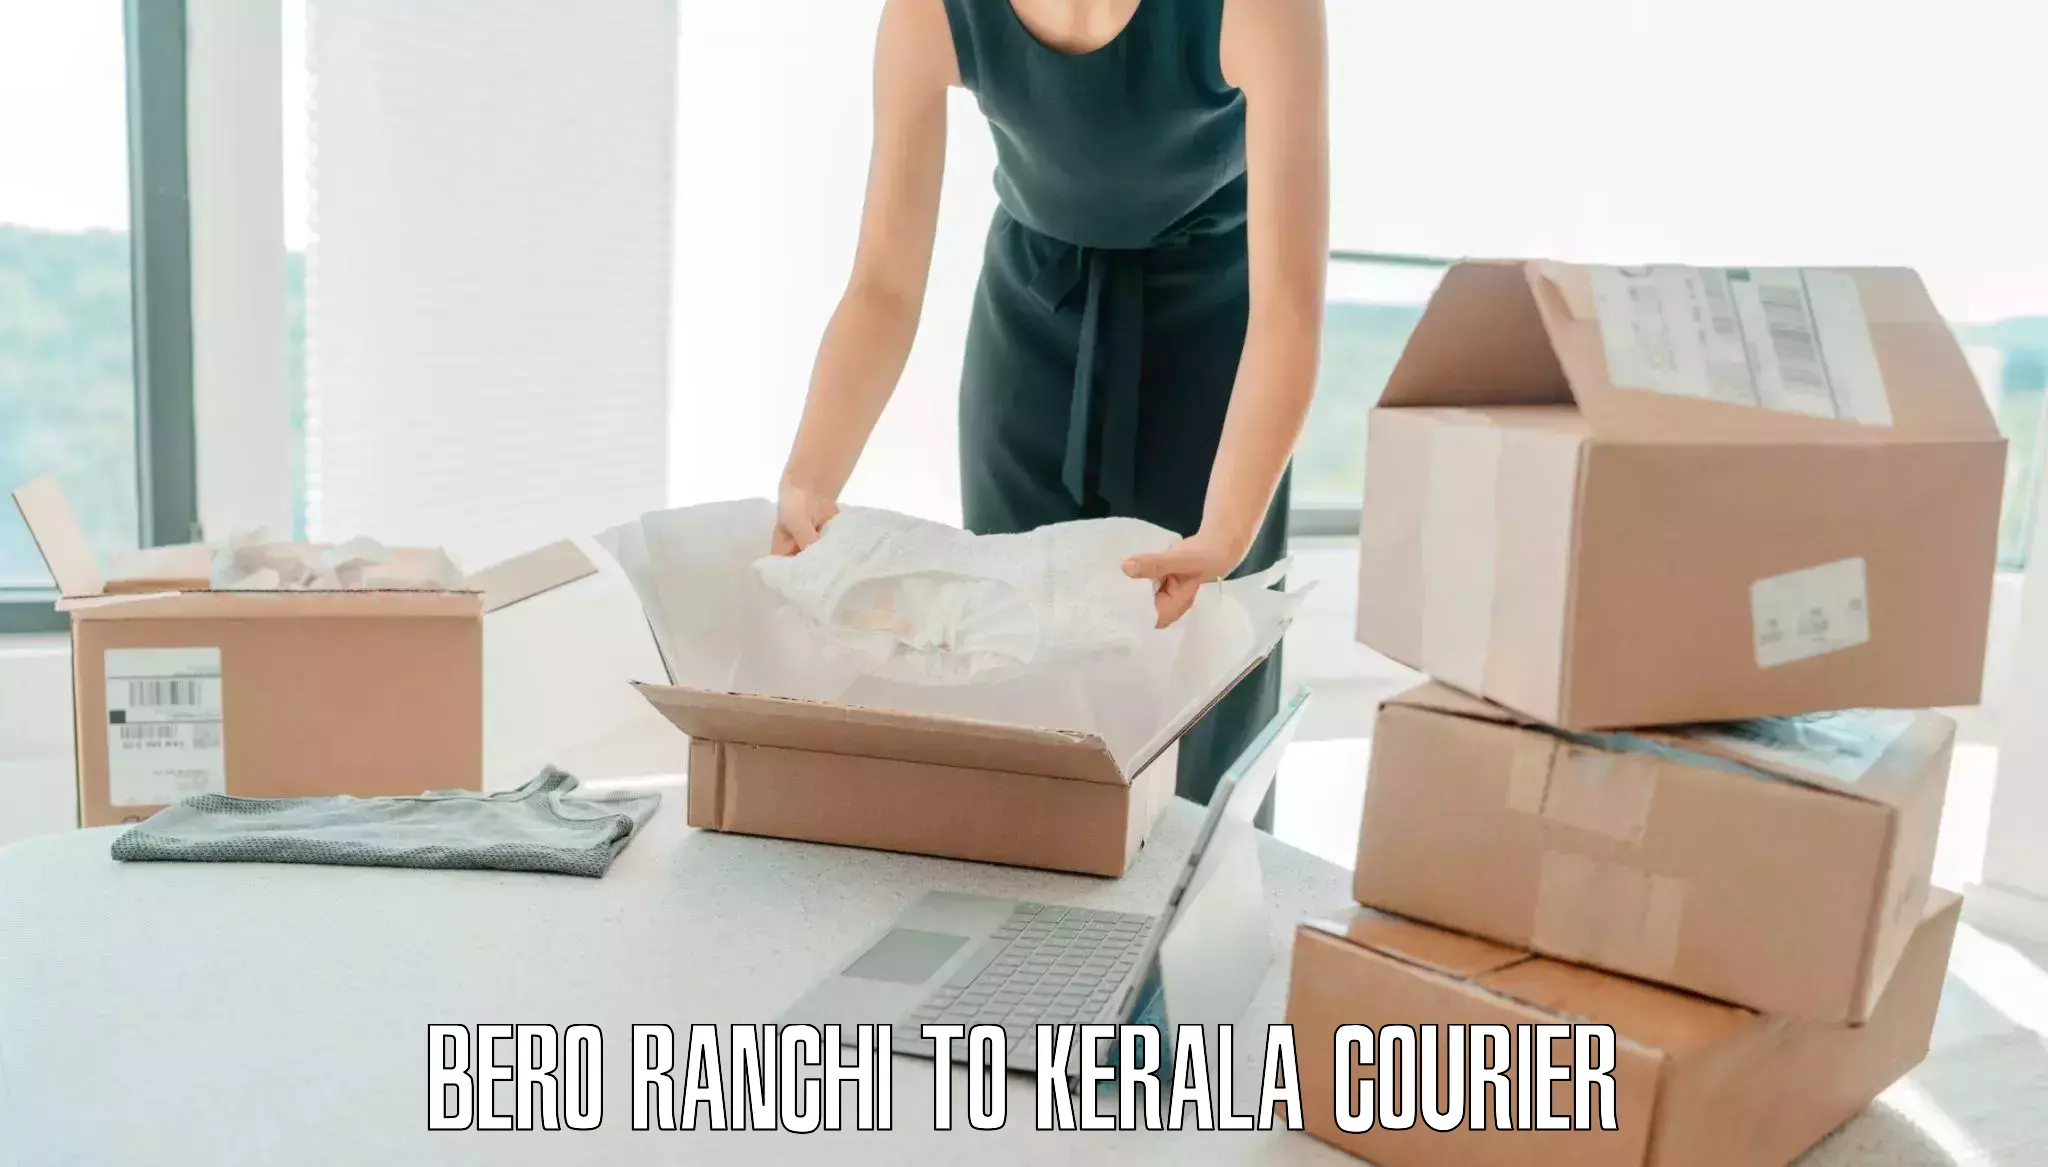 Baggage courier service Bero Ranchi to Koyilandy